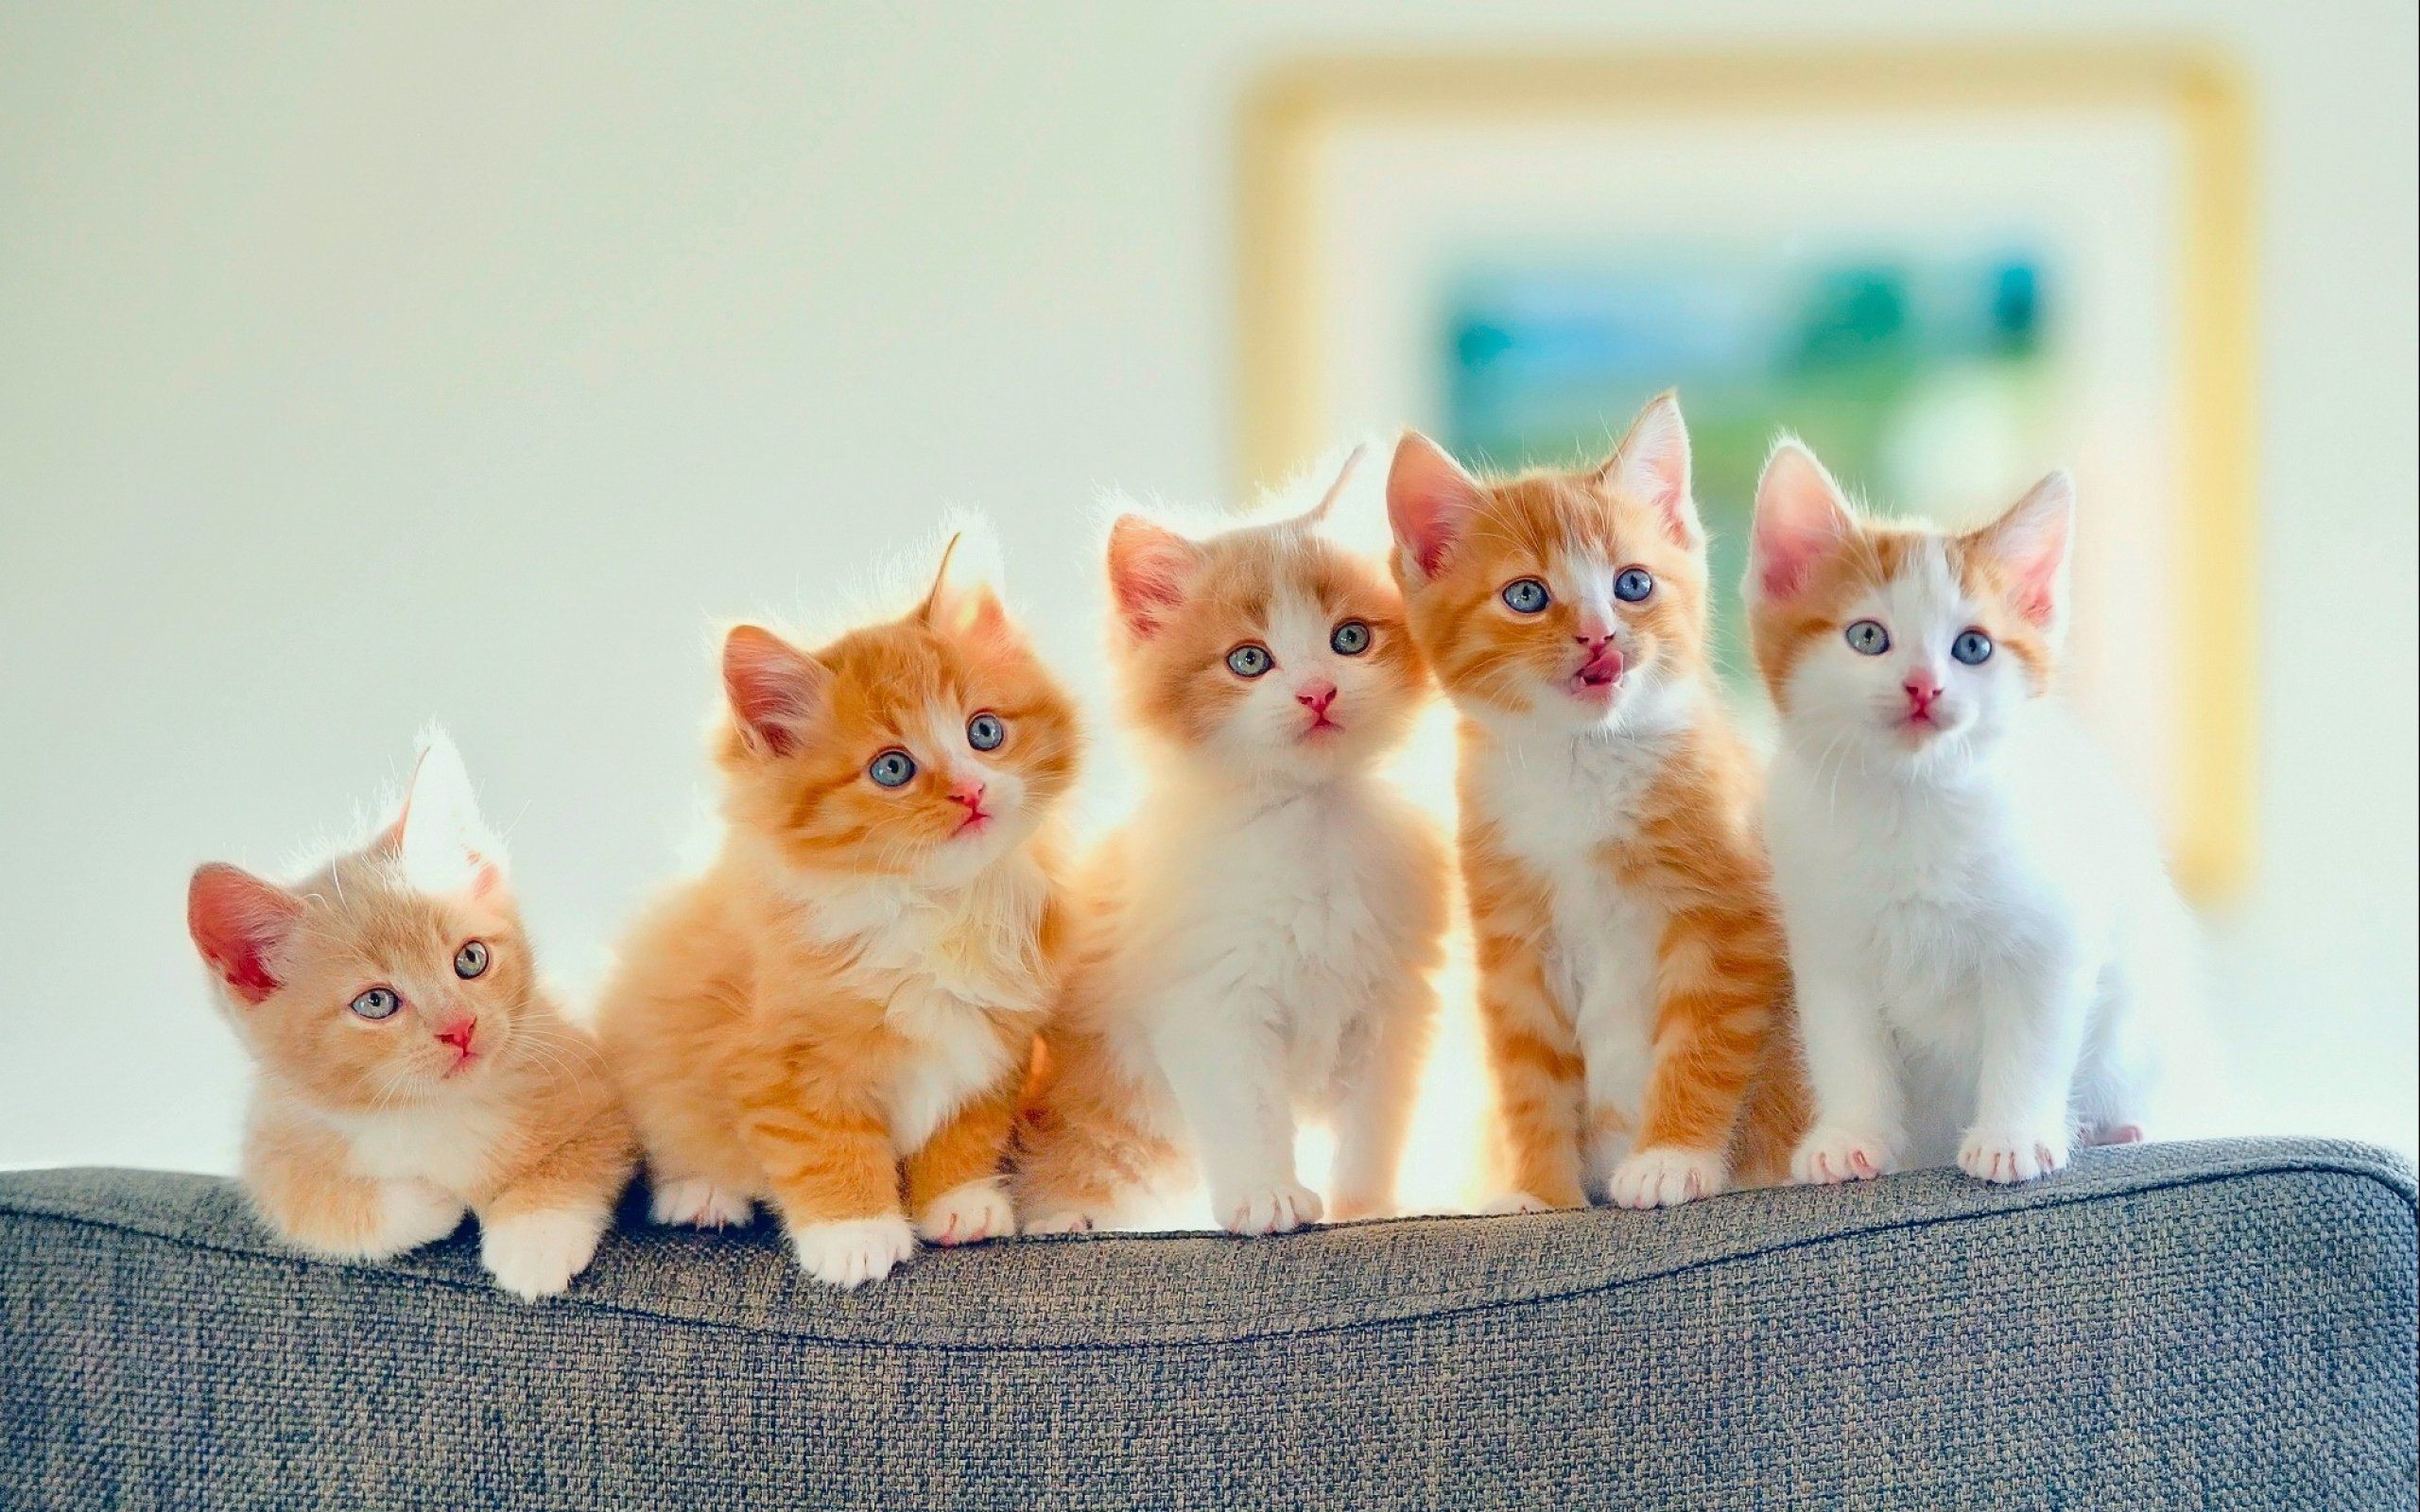 2560x1600 Kittens kitten cat cats baby cute s wallpaper